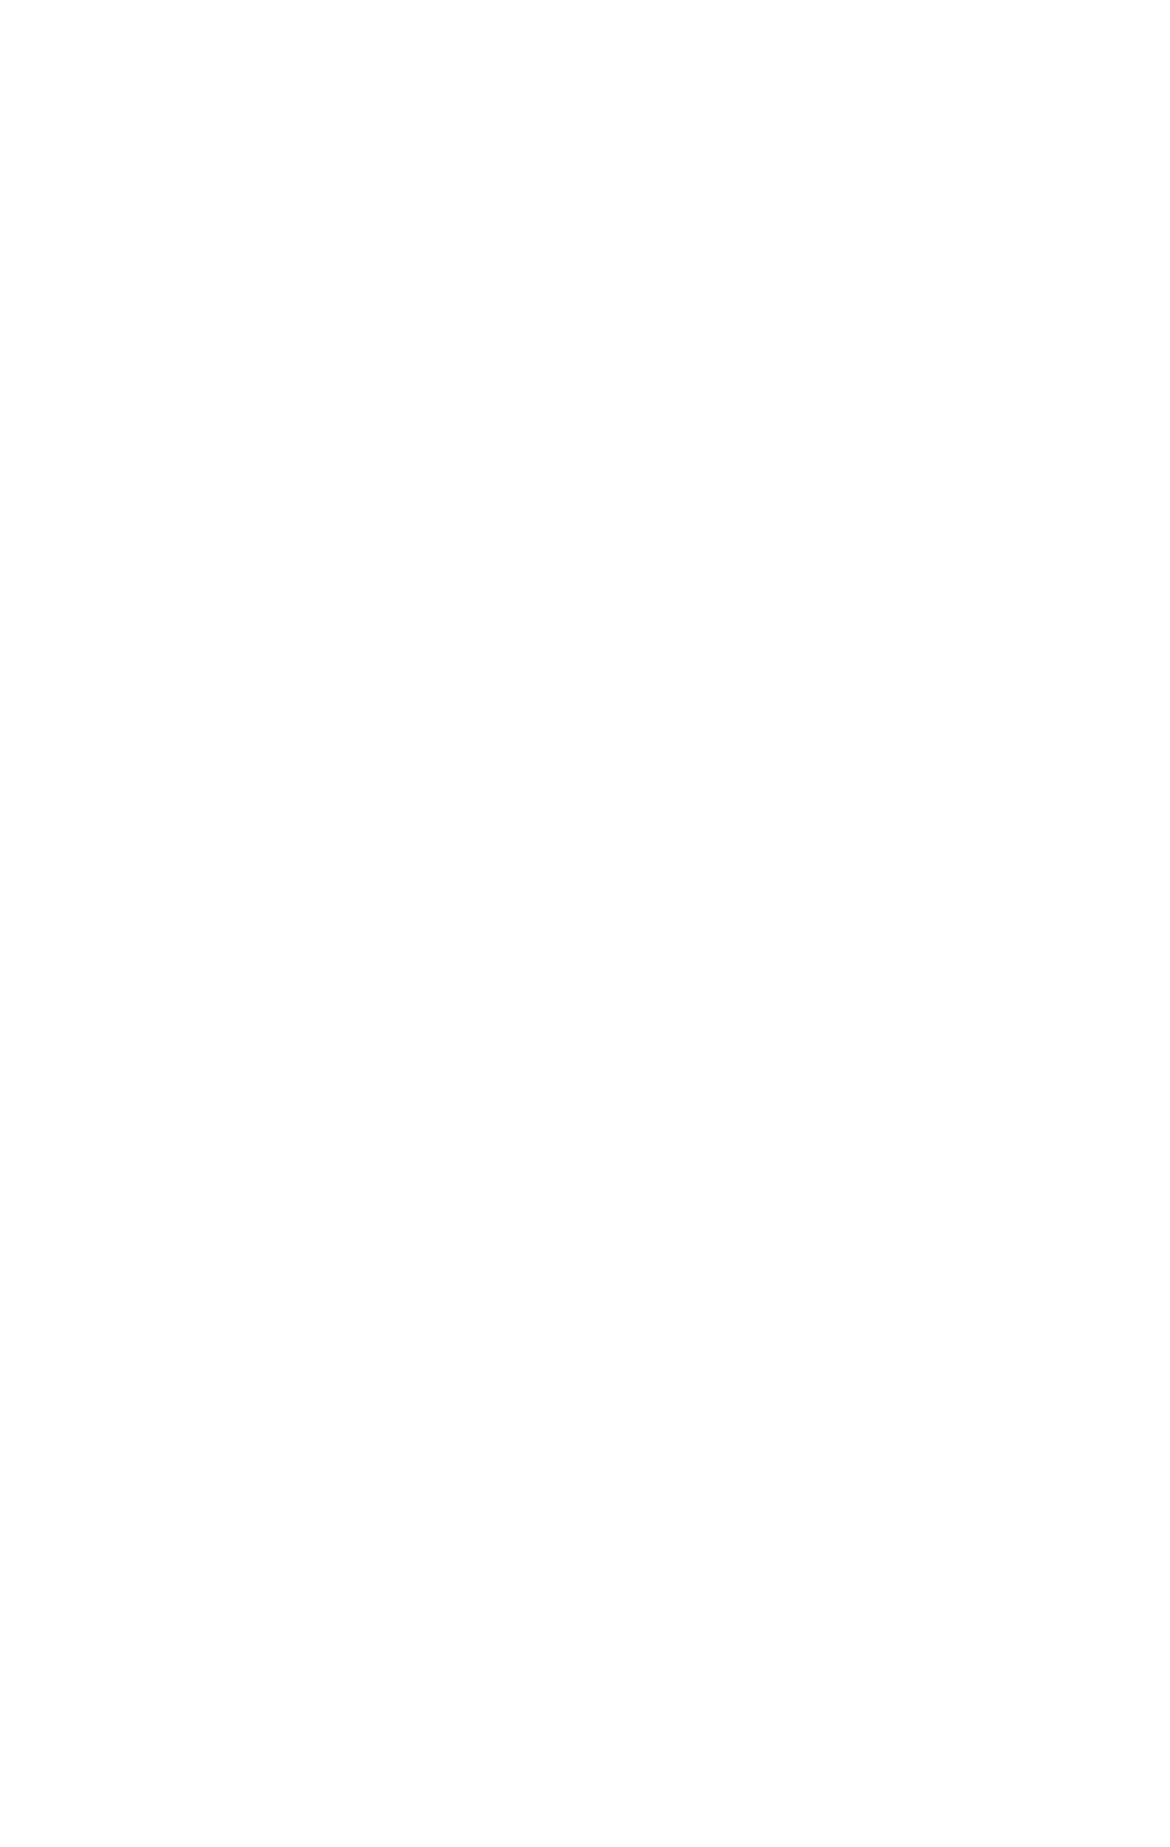 Žurnalistas iš Japonijos rengia reportažą prie Lietuvos Aukščiausiosios Tarybos rūmų. Vilnius, 1991 m. žiema. Kauno miesto muziejaus fondai